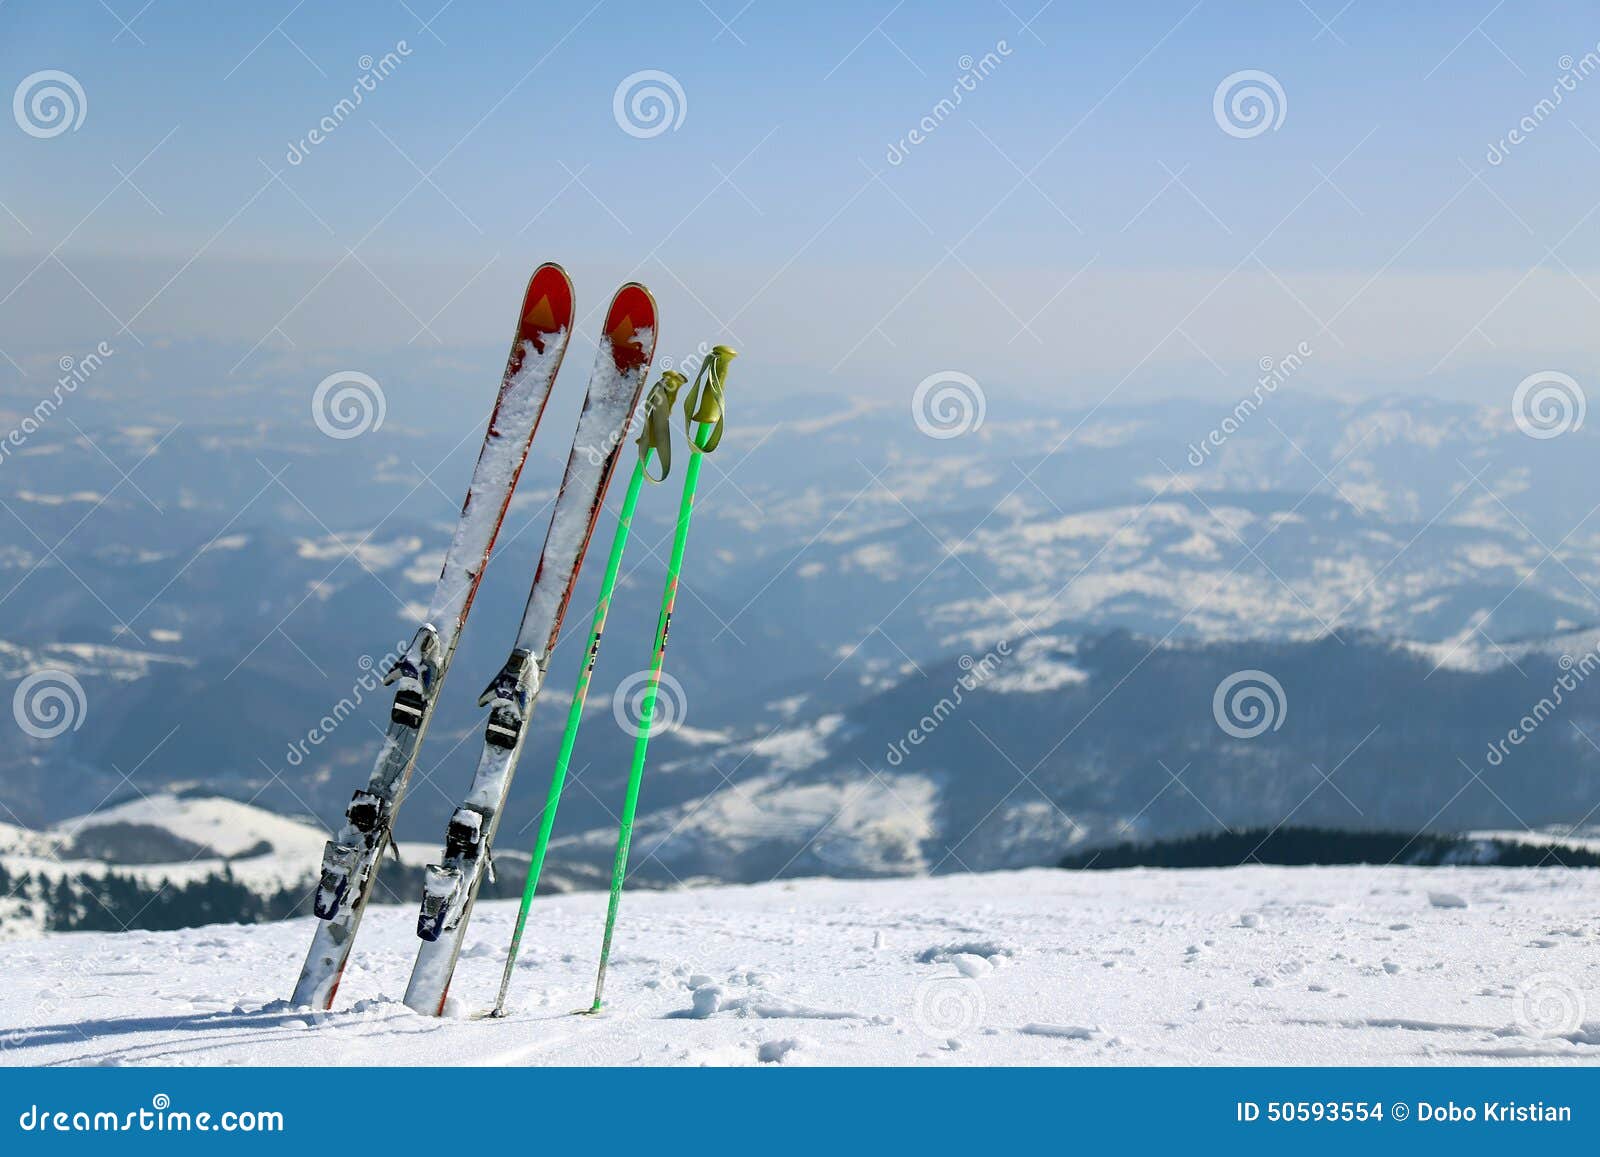 skis in kopaonik mountain , serbia